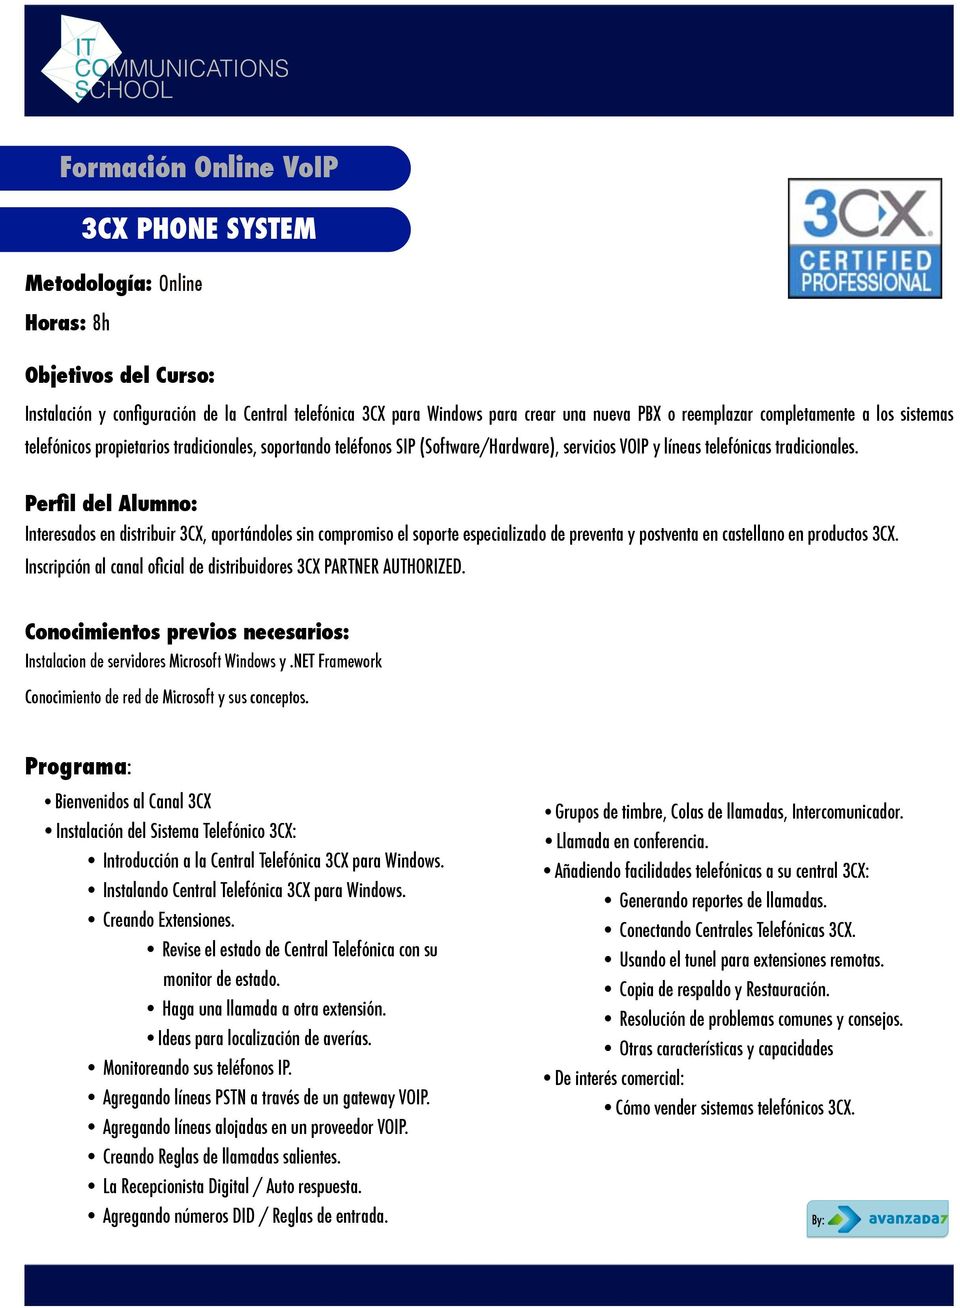 Interesados en distribuir 3CX, aportándoles sin compromiso el soporte especializado de preventa y postventa en castellano en productos 3CX.